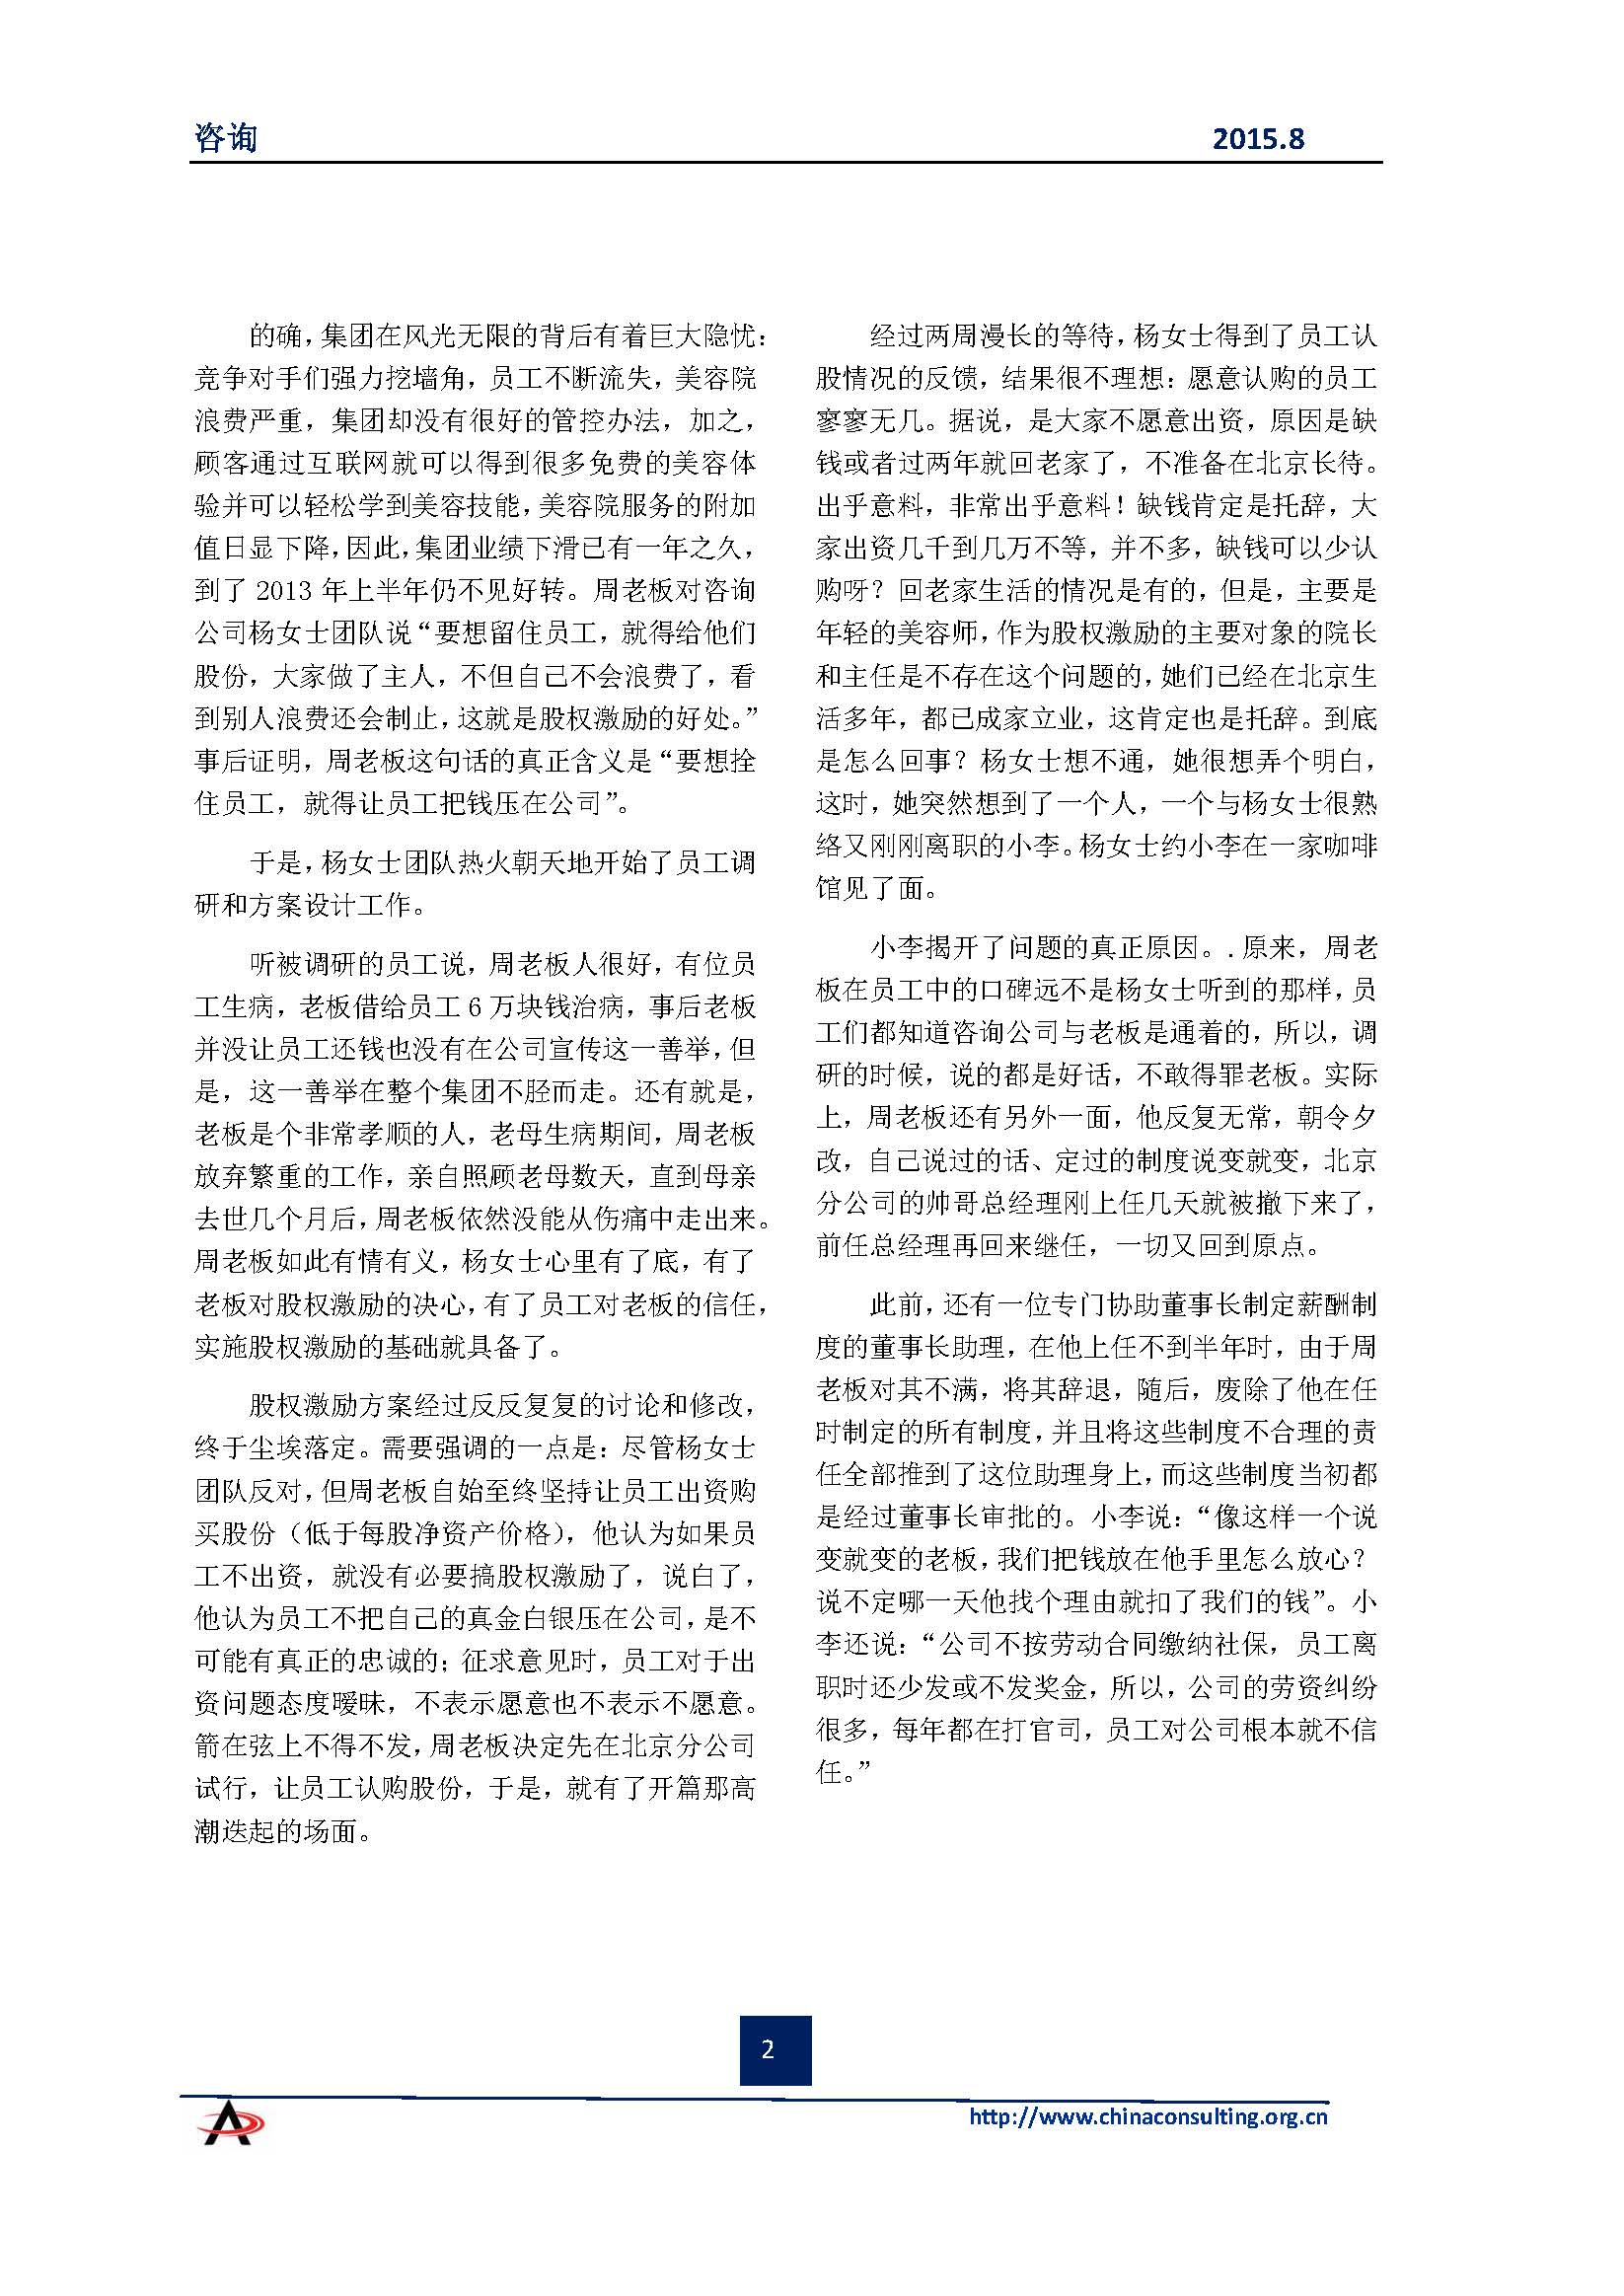 中国科技咨询协会会刊（第四十期）初稿_页面_04.jpg